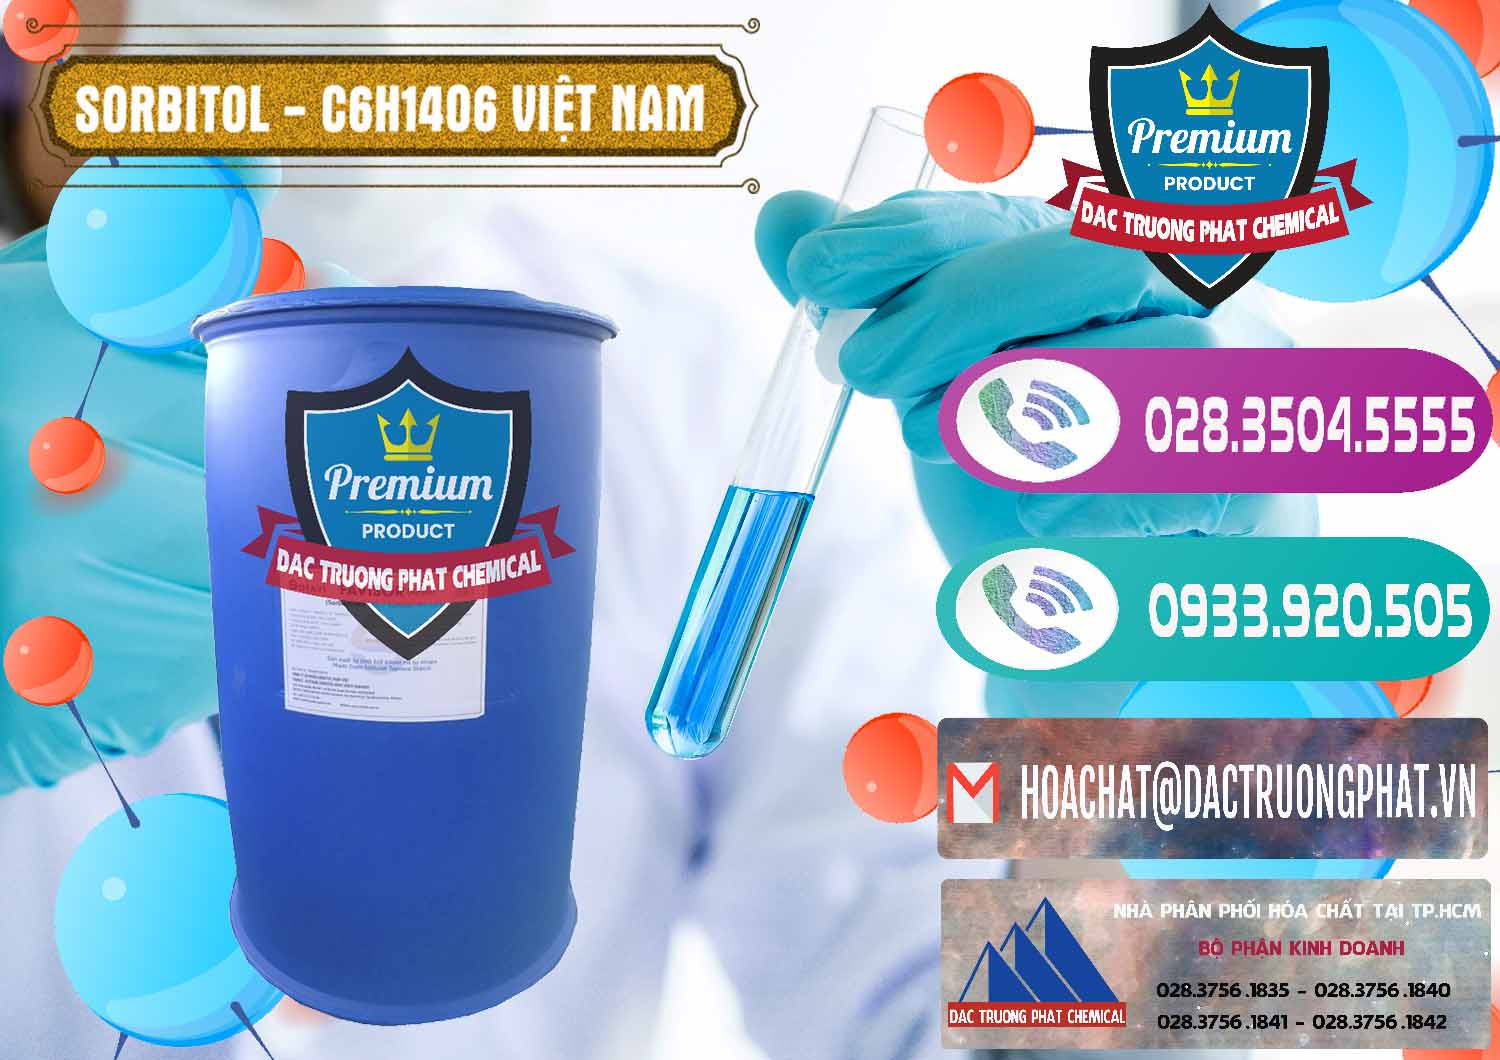 Nơi bán & cung ứng Sorbitol - C6H14O6 Lỏng 70% Food Grade Việt Nam - 0438 - Cty phân phối _ kinh doanh hóa chất tại TP.HCM - hoachatxulynuoc.com